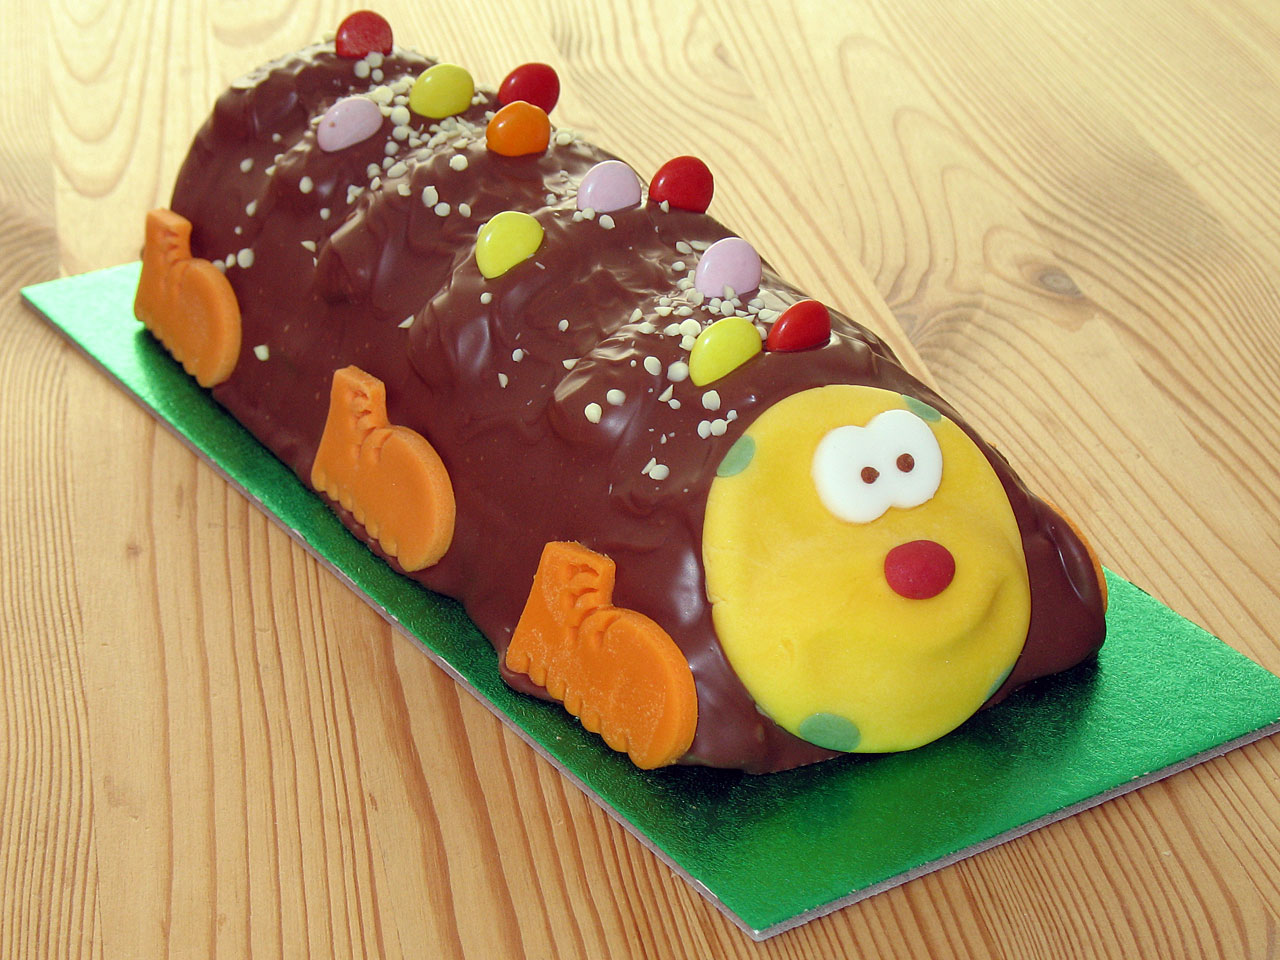 Children's chocolate cake in caterpillar shape